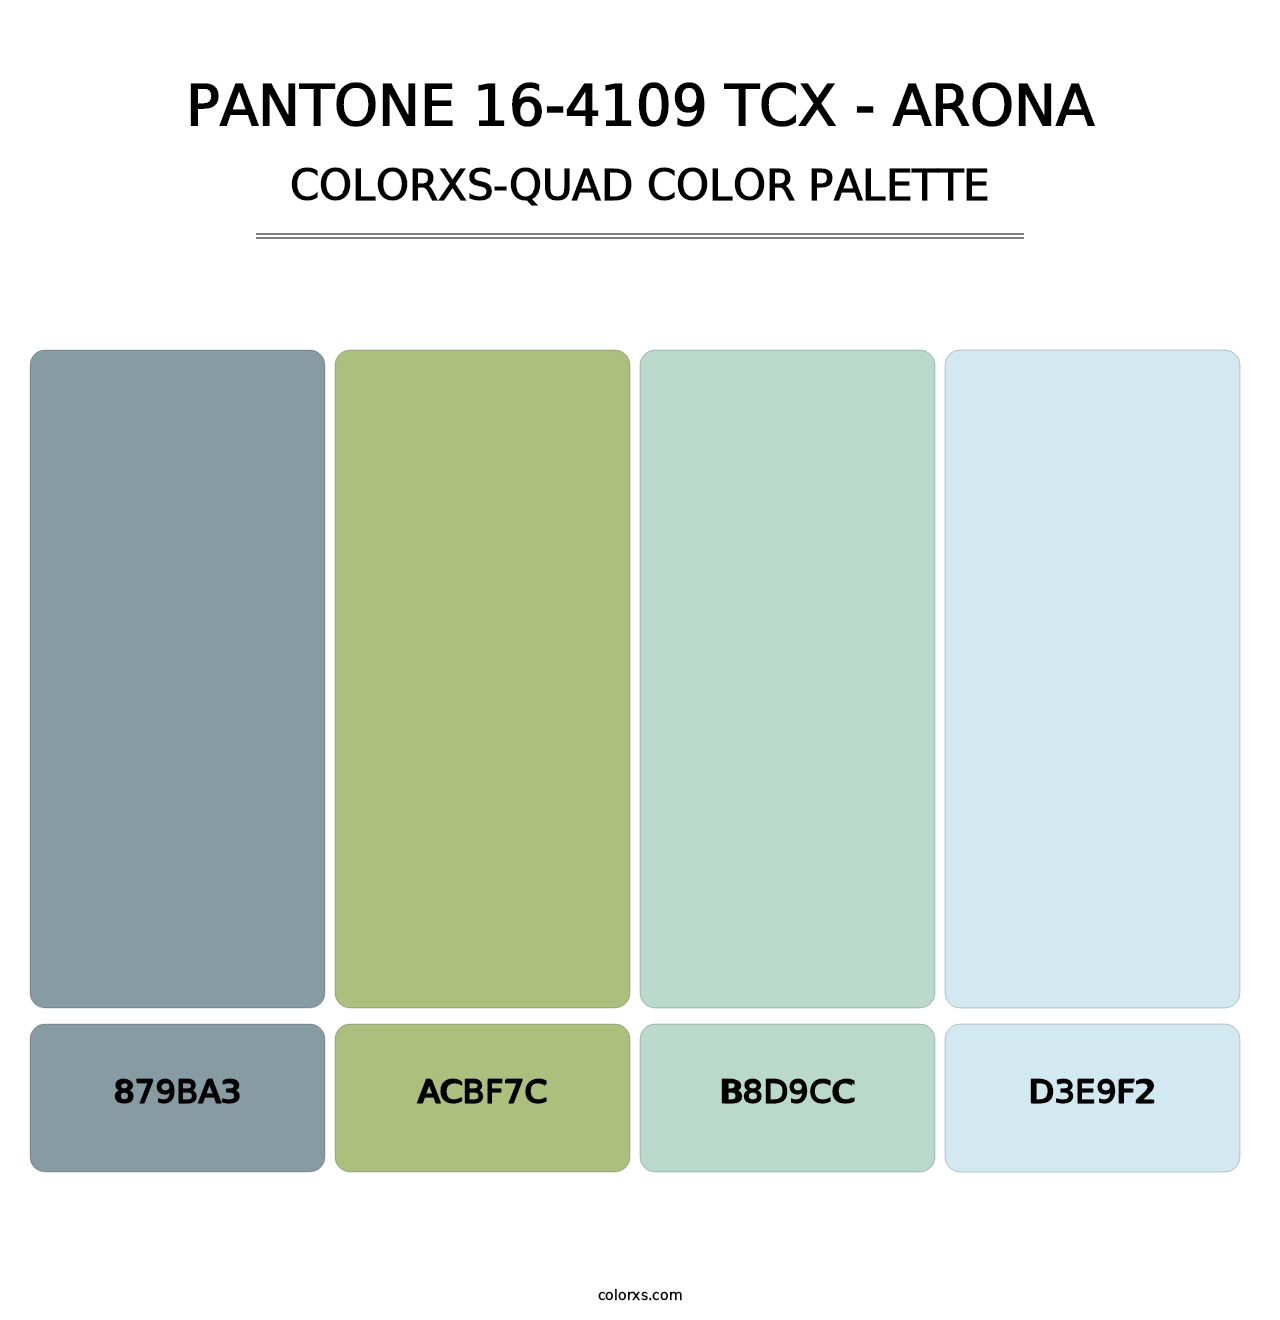 PANTONE 16-4109 TCX - Arona - Colorxs Quad Palette